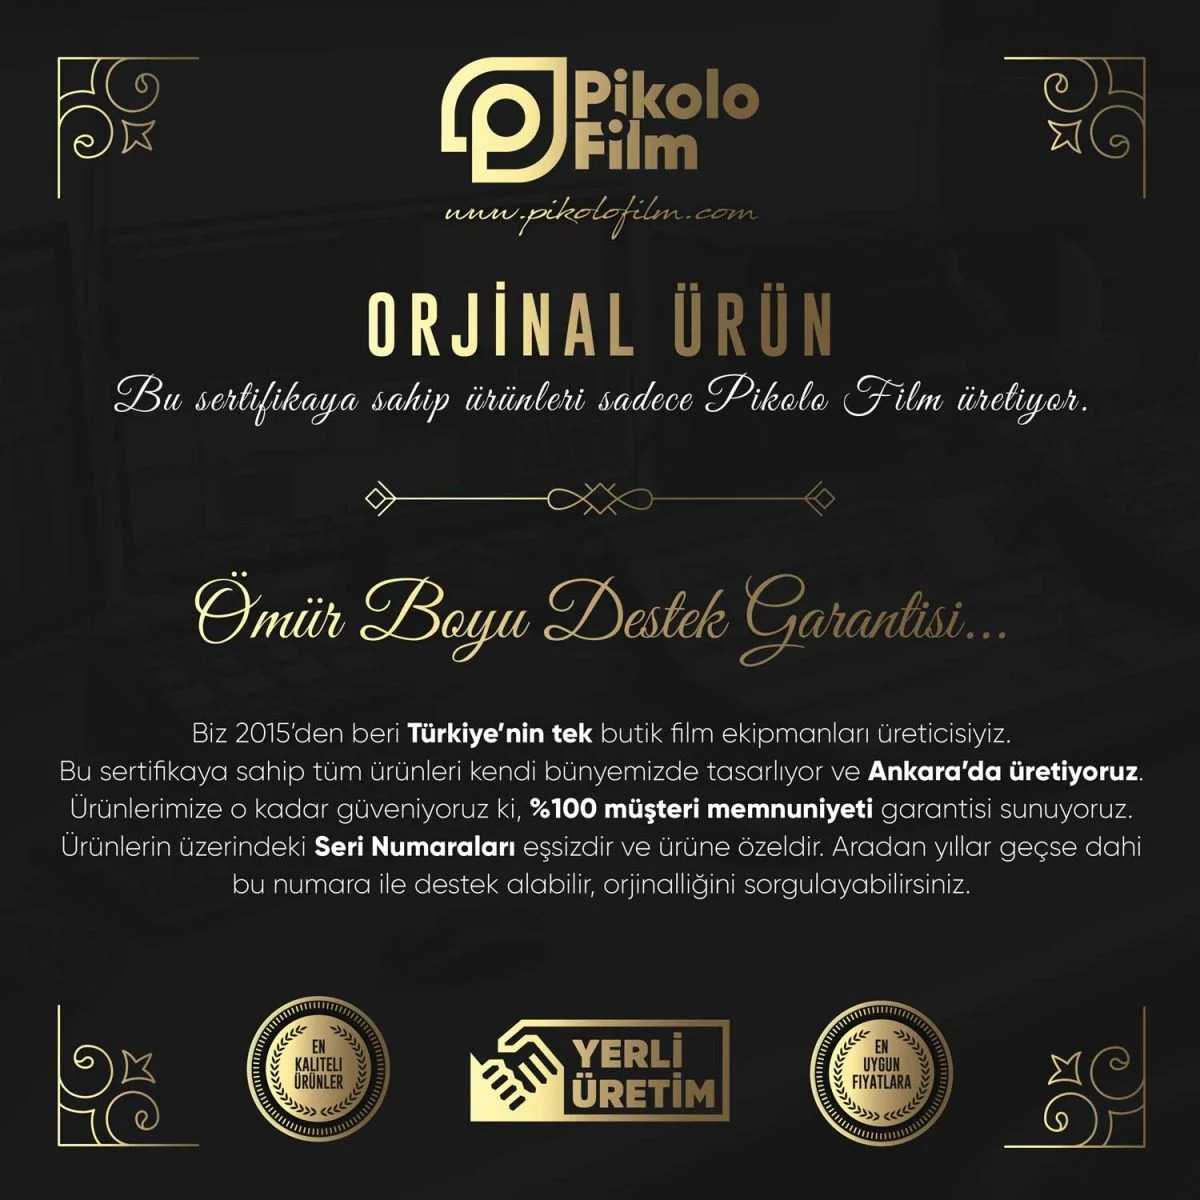 Pikolo'nun orjinallik sertifikası